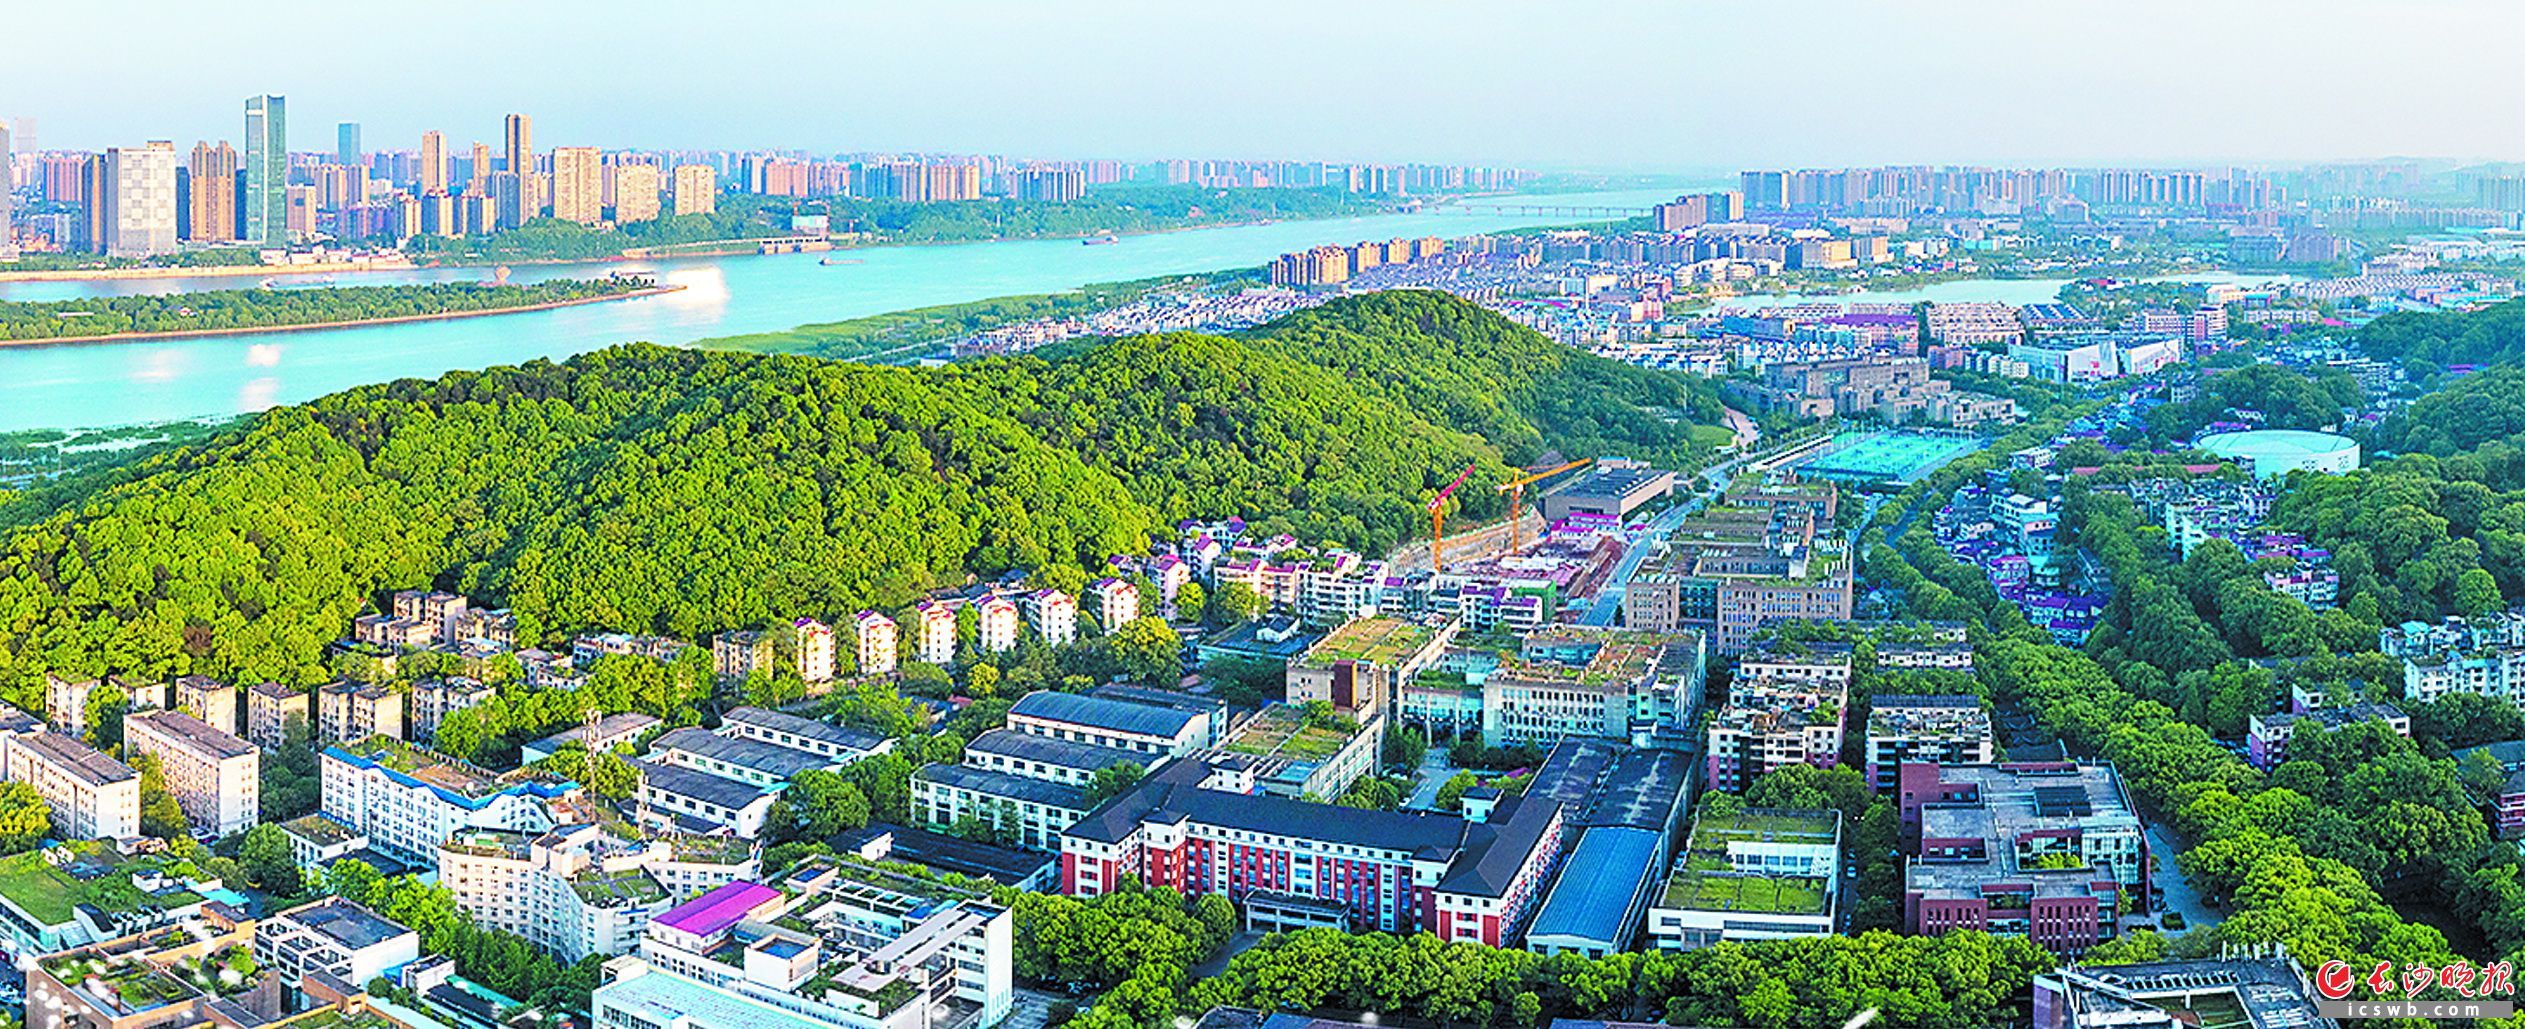 湘江边，麓山下，正崛起一座瞄准一流的大学科技城。